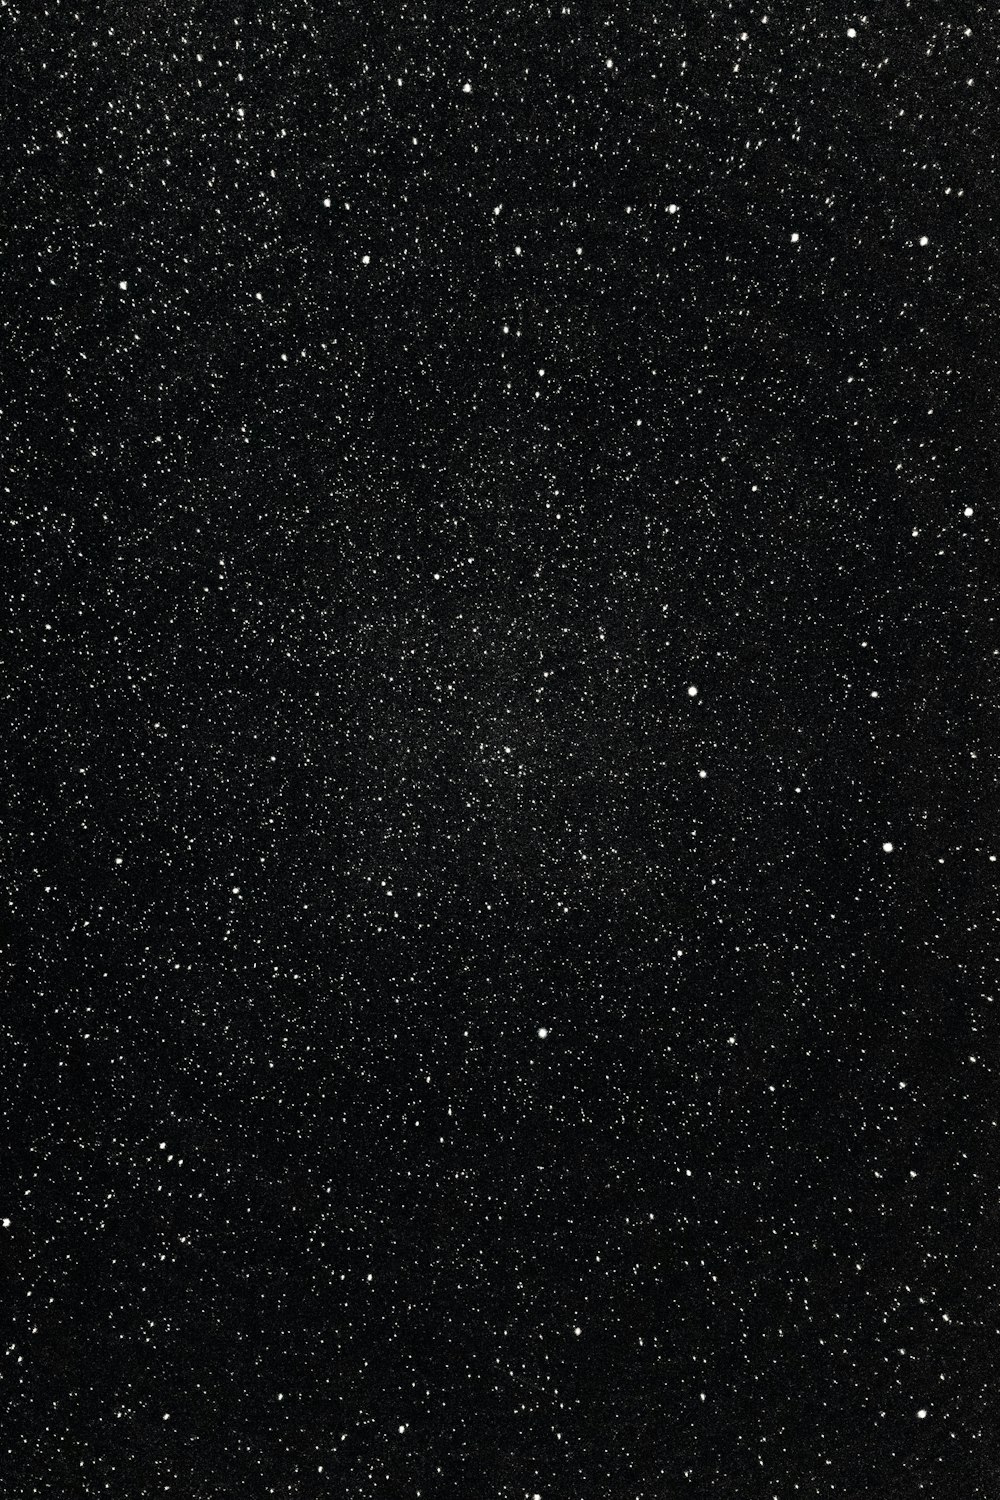 밤하늘의 흑백 사진